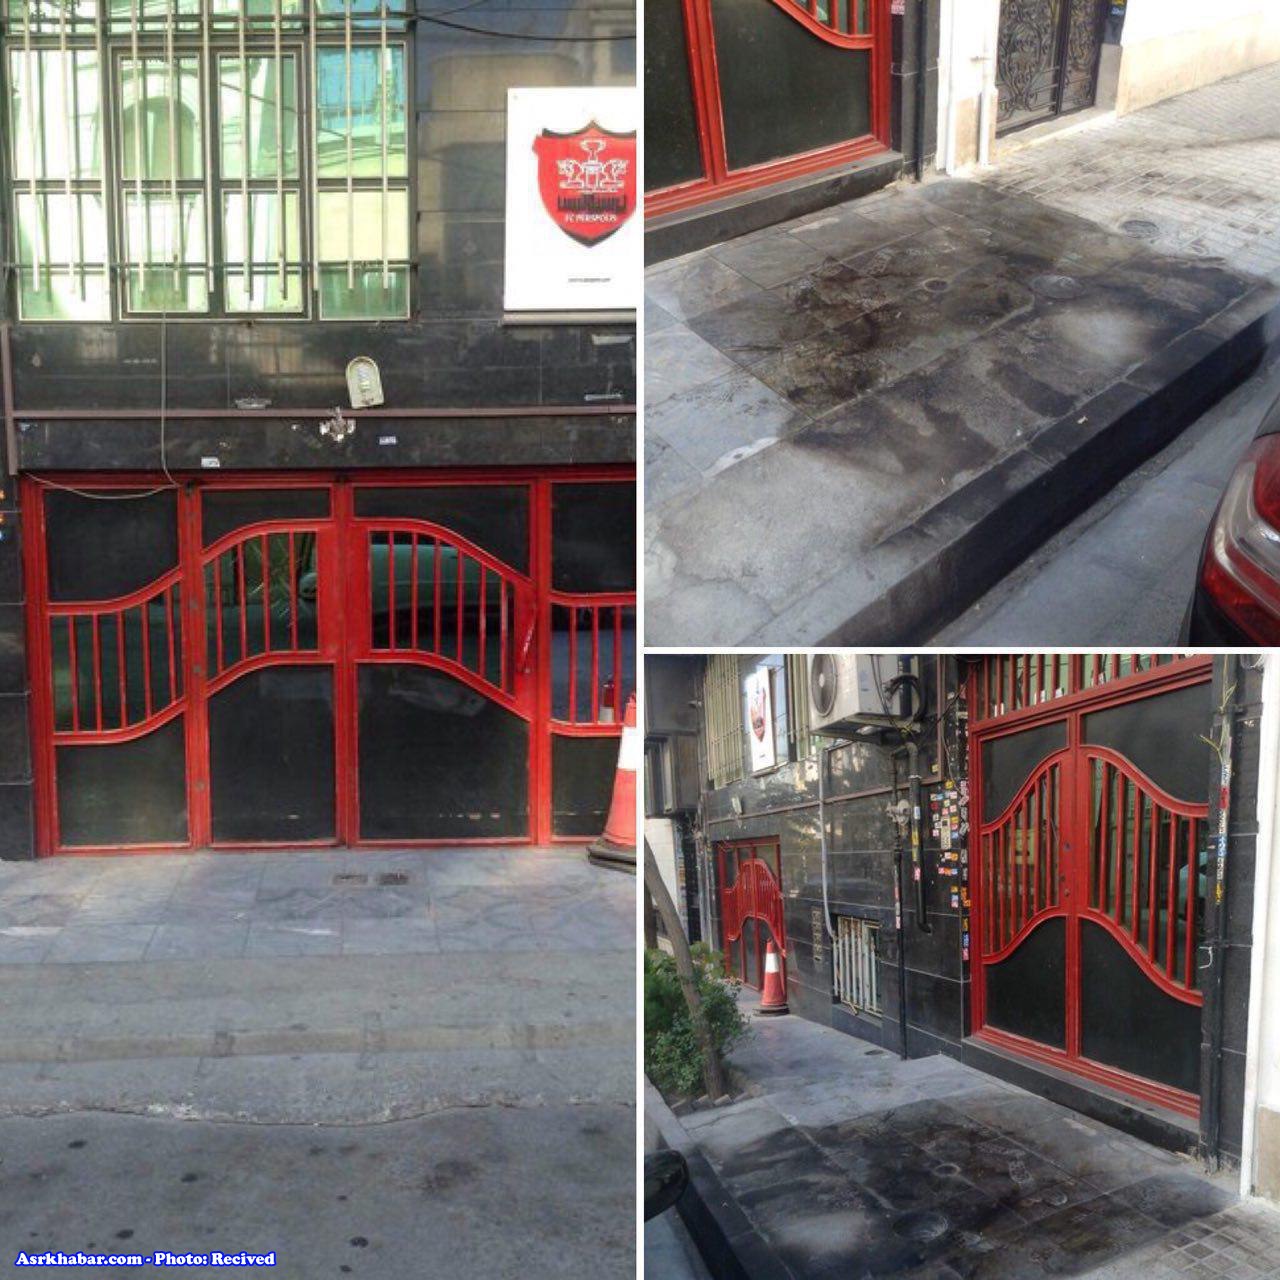 تصاویری از وضعیت فعلی ورودی ساختمان باشگاه پرسپولیس، پس از حمله نافرجام دیشب